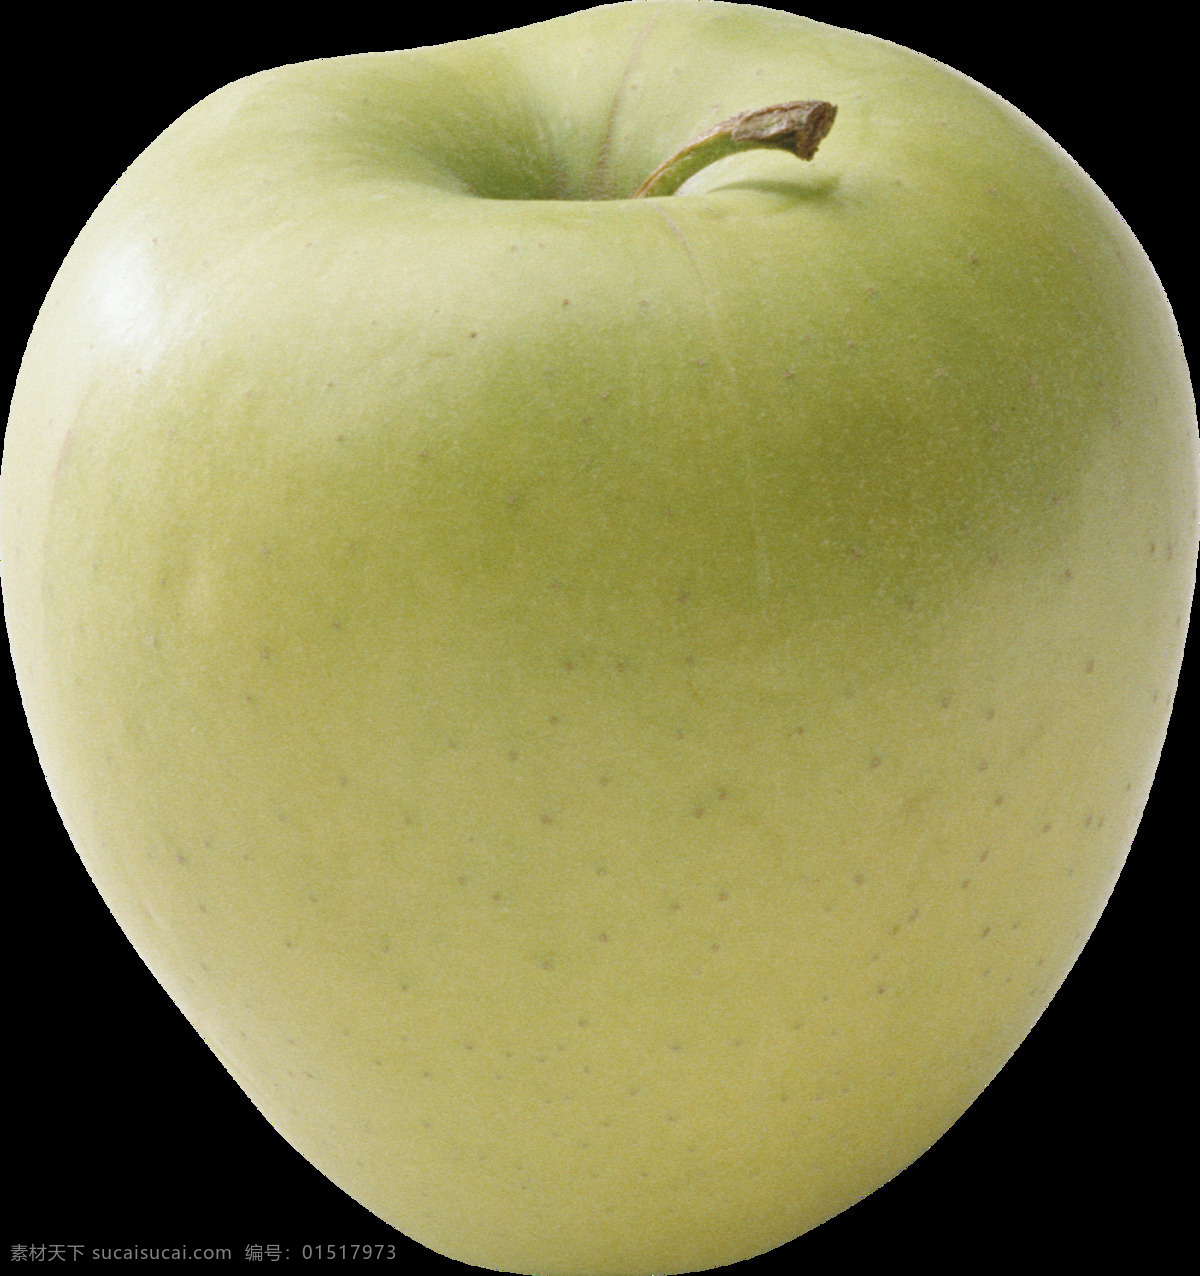 漂亮 绿 苹果 免 抠 透明 图 层 青苹果 苹果卡通图片 苹果logo 苹果简笔画 壁纸高清 大苹果 红苹果 苹果梨树 苹果商标 金毛苹果 青苹果榨汁